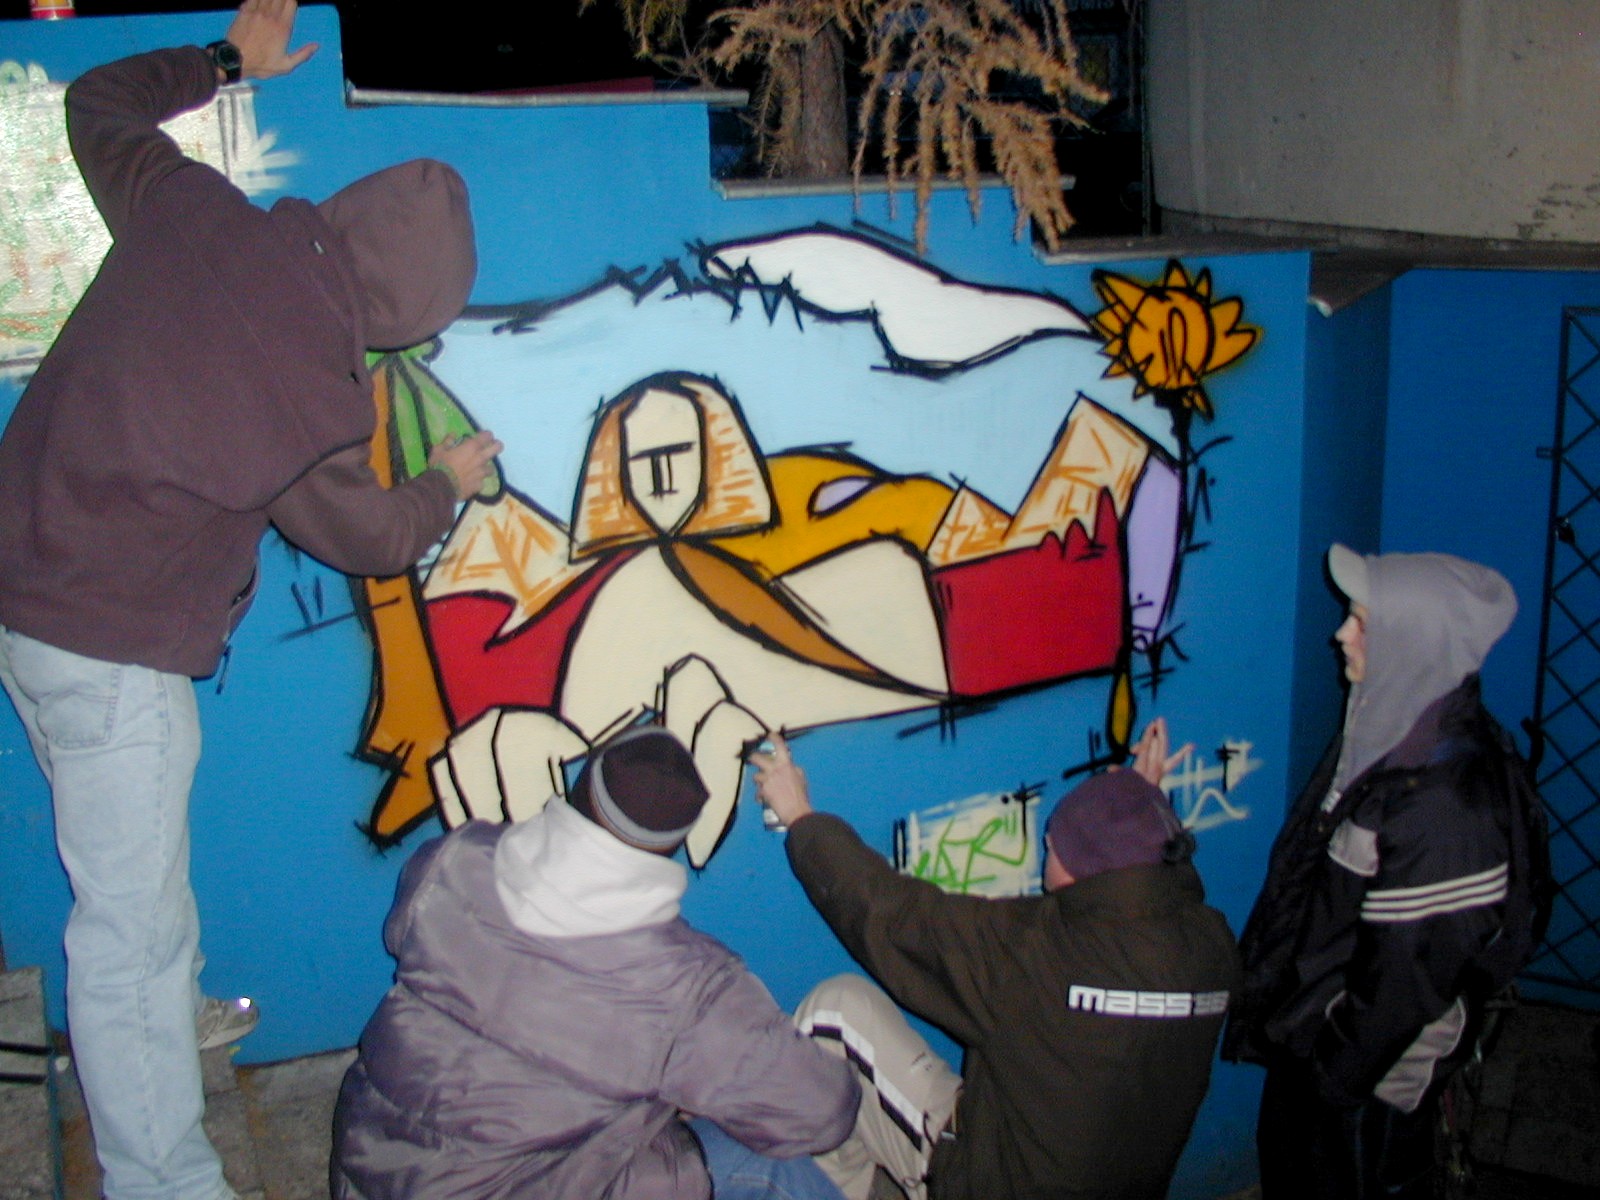 Bialscy "grafficiarze” podczas jednej z akcji upiększania swojego miasta